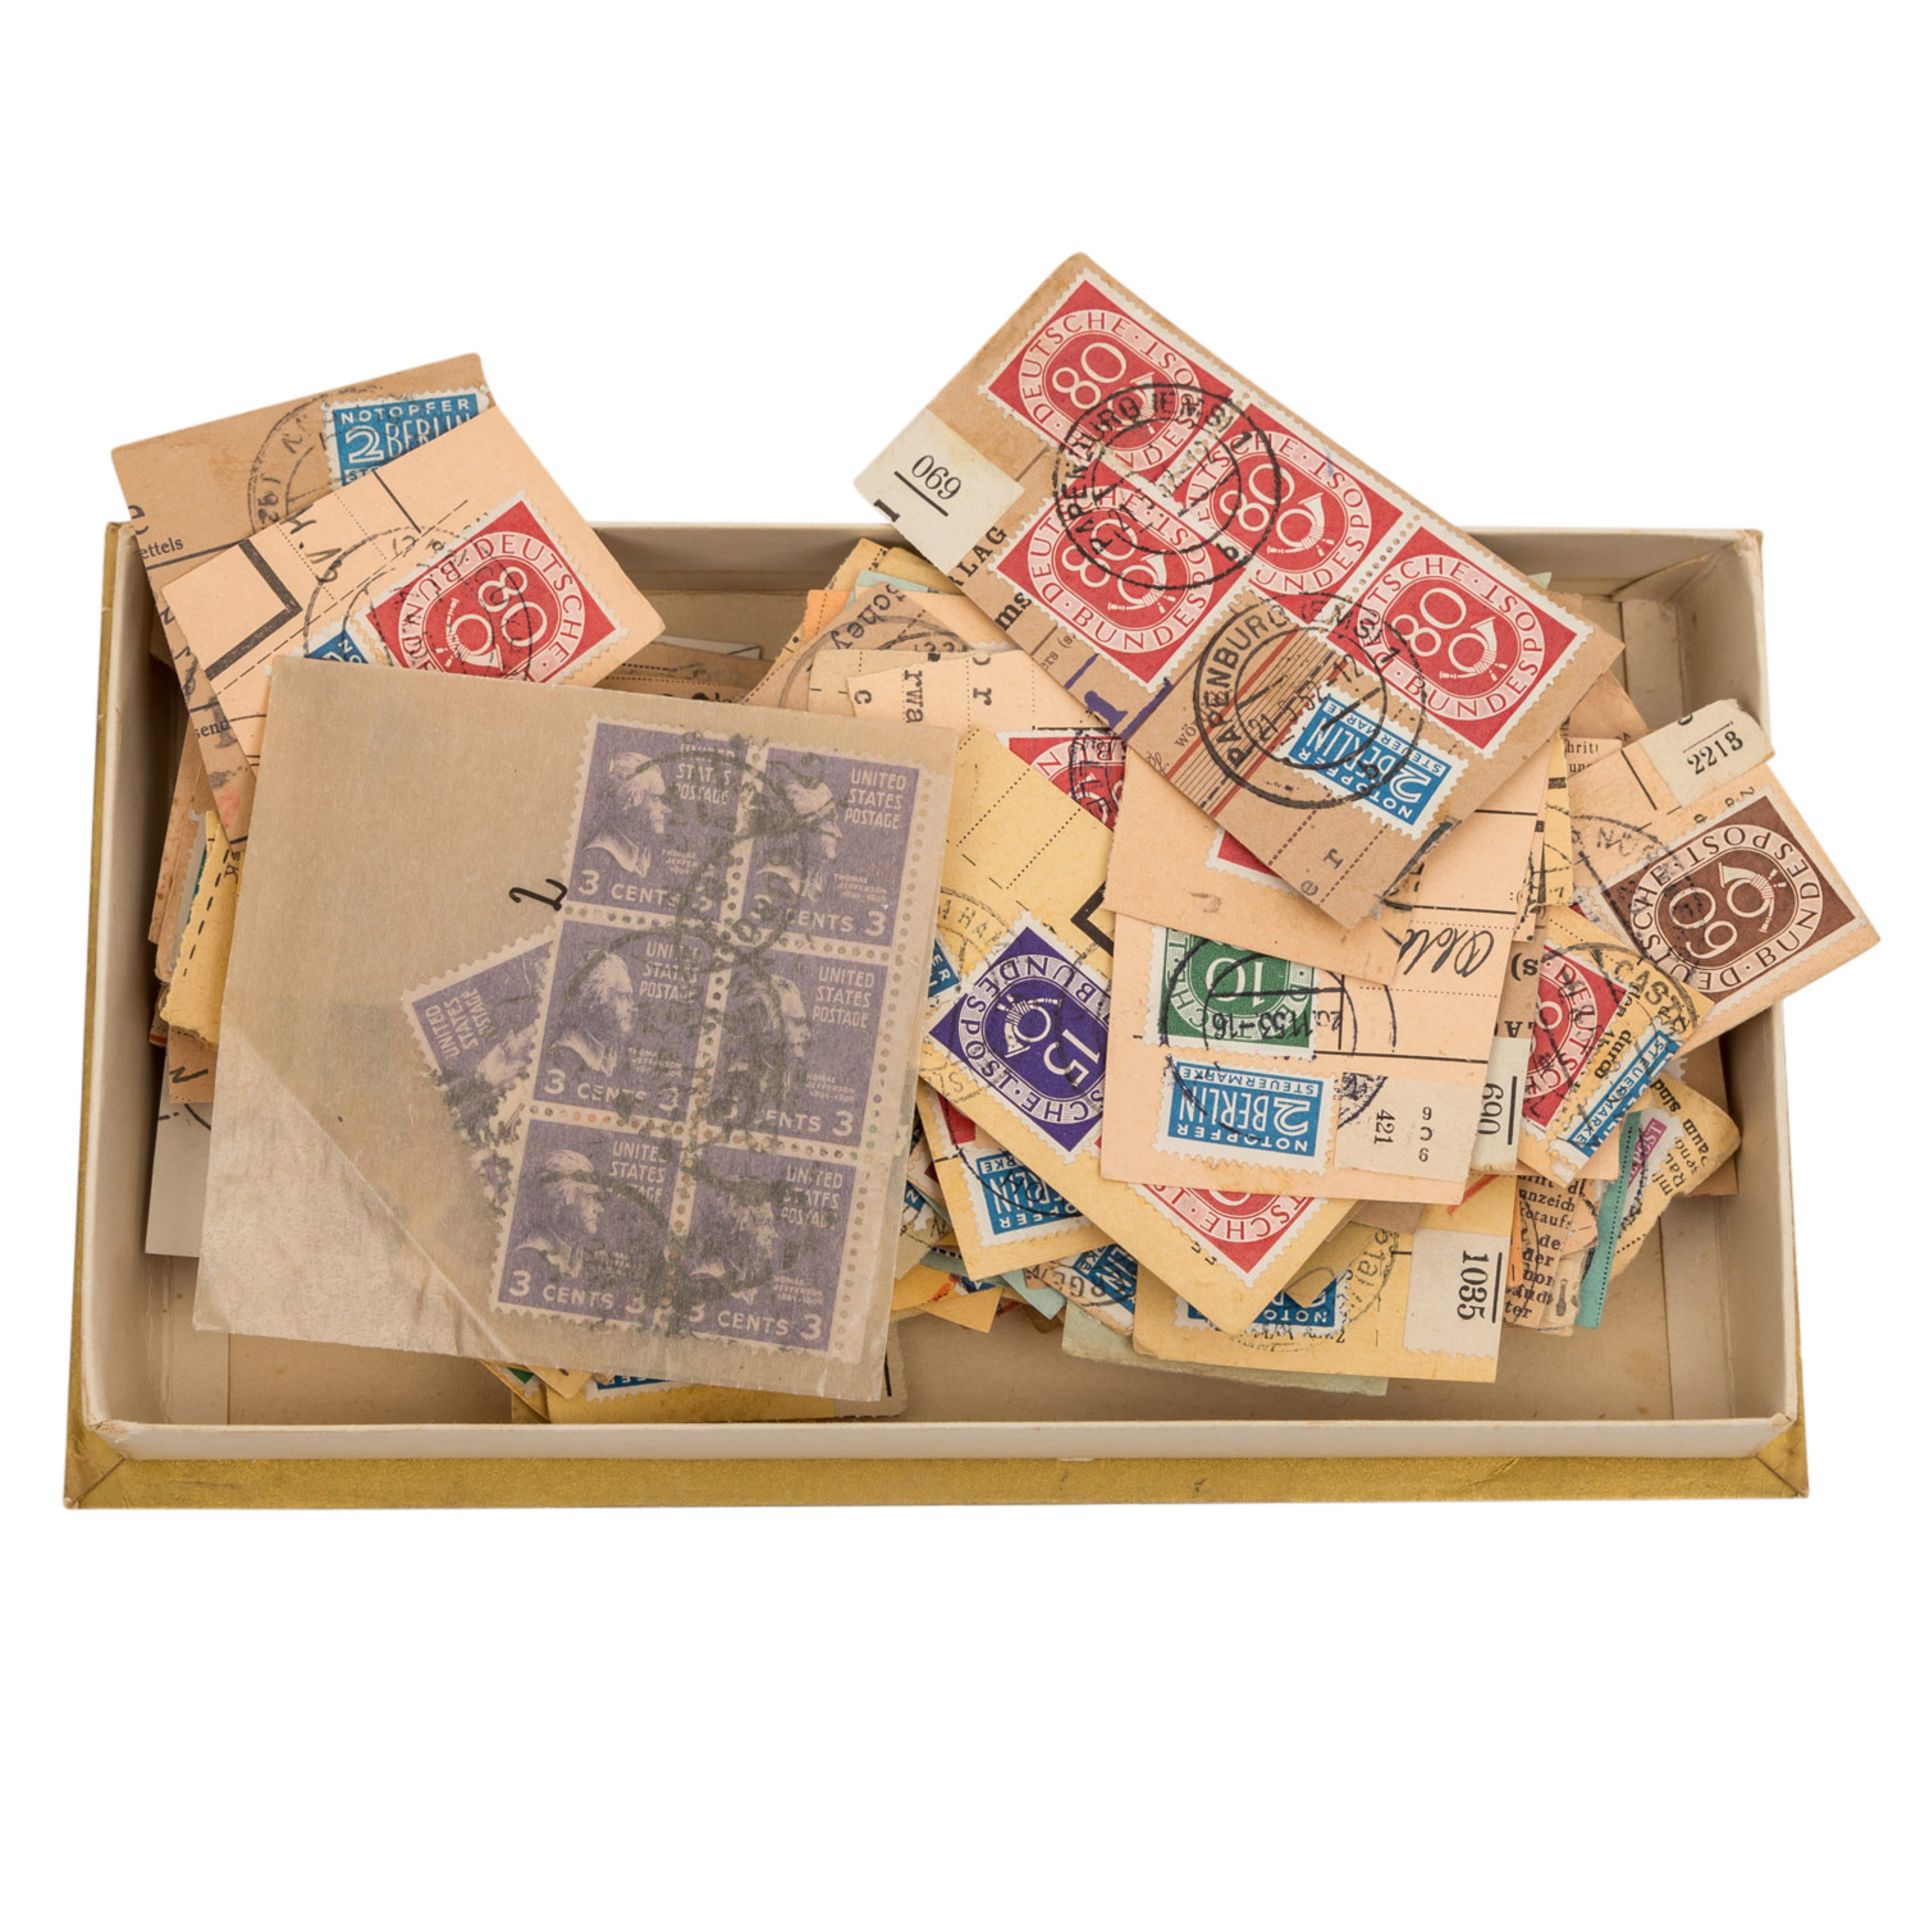 Briefmarken, Wunderkiste,dabei 3 gerahmte Darstellungen mit Zeppelinbezug, bitte ansehen.Box of - Bild 2 aus 3